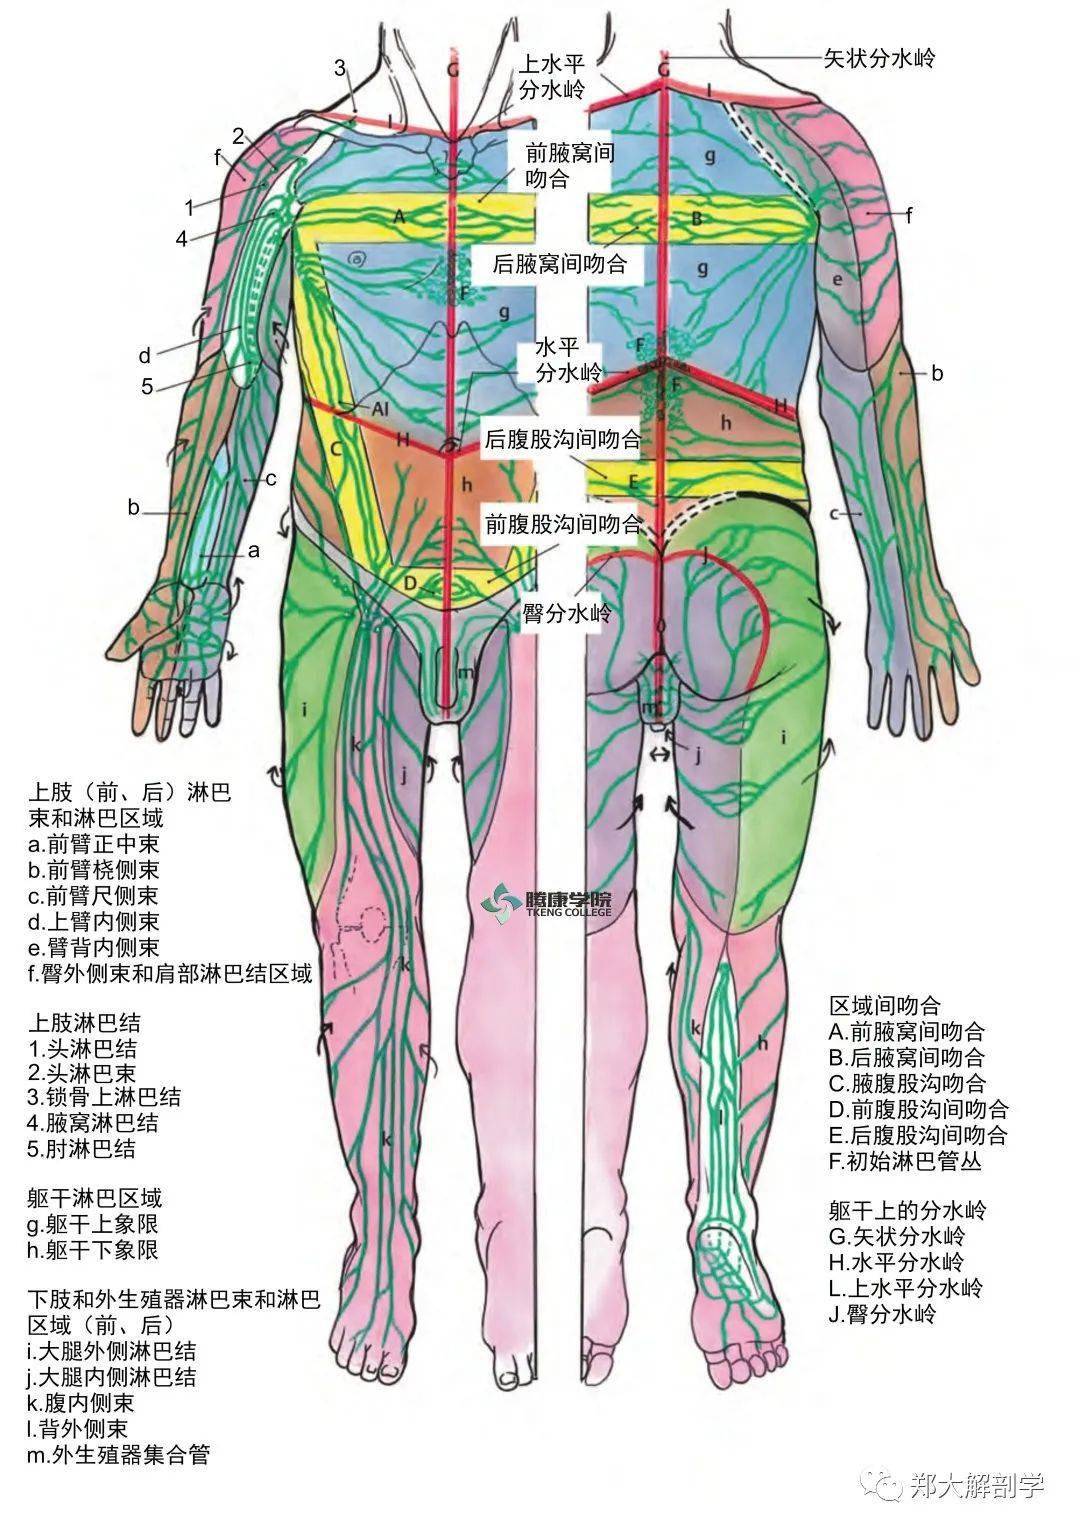 身体不同部位的淋巴引流和局部淋巴结群